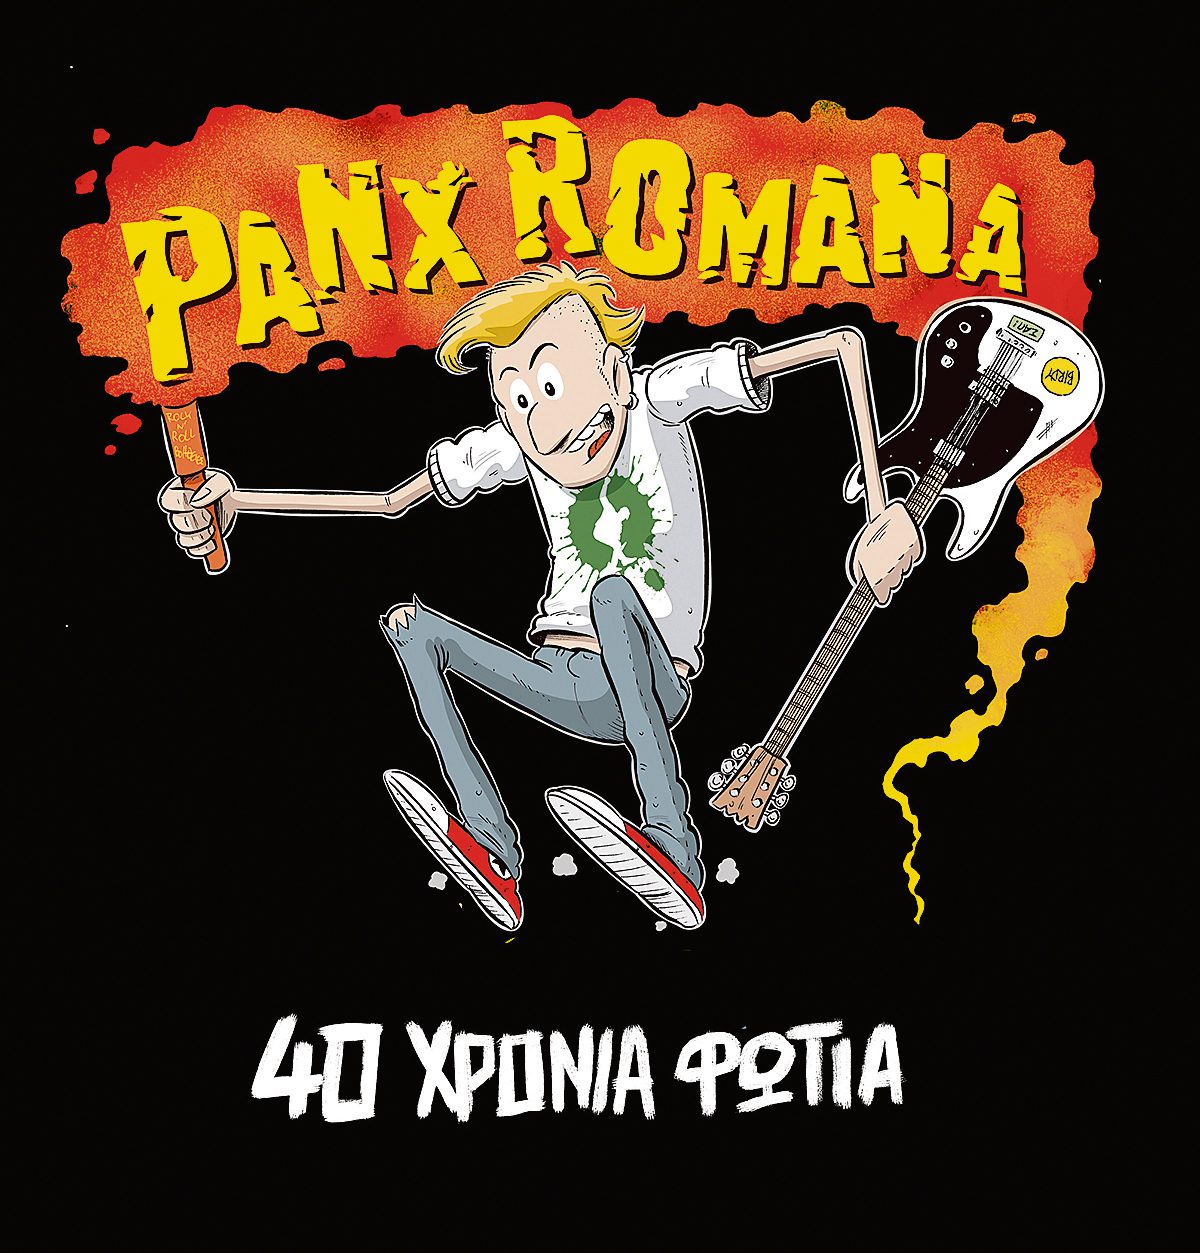 V8 PL6 Panx Romana 40 Χρόνια Φωτιά